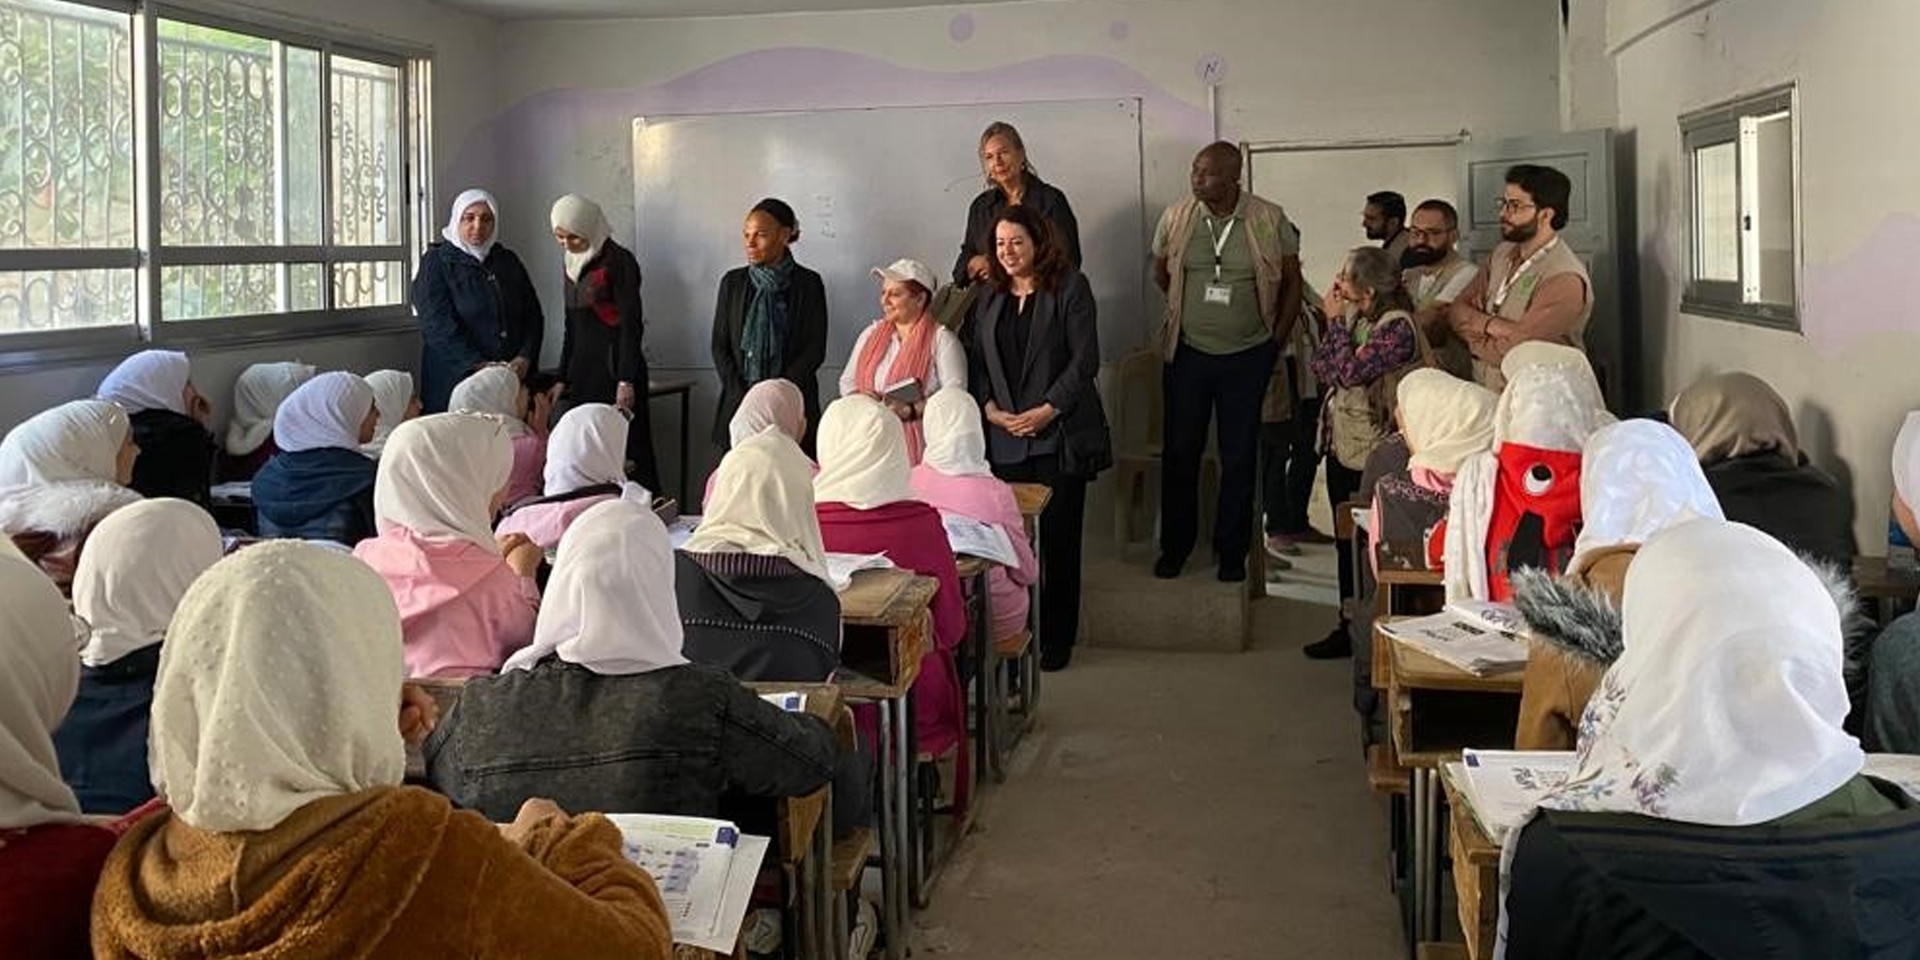 École de filles en Syrie: On voit notamment la directrice de la DDC Patricia Danzi et l'ambassadrice Maya Tissafi échanger avec des écolières devant le tableau de la classe.